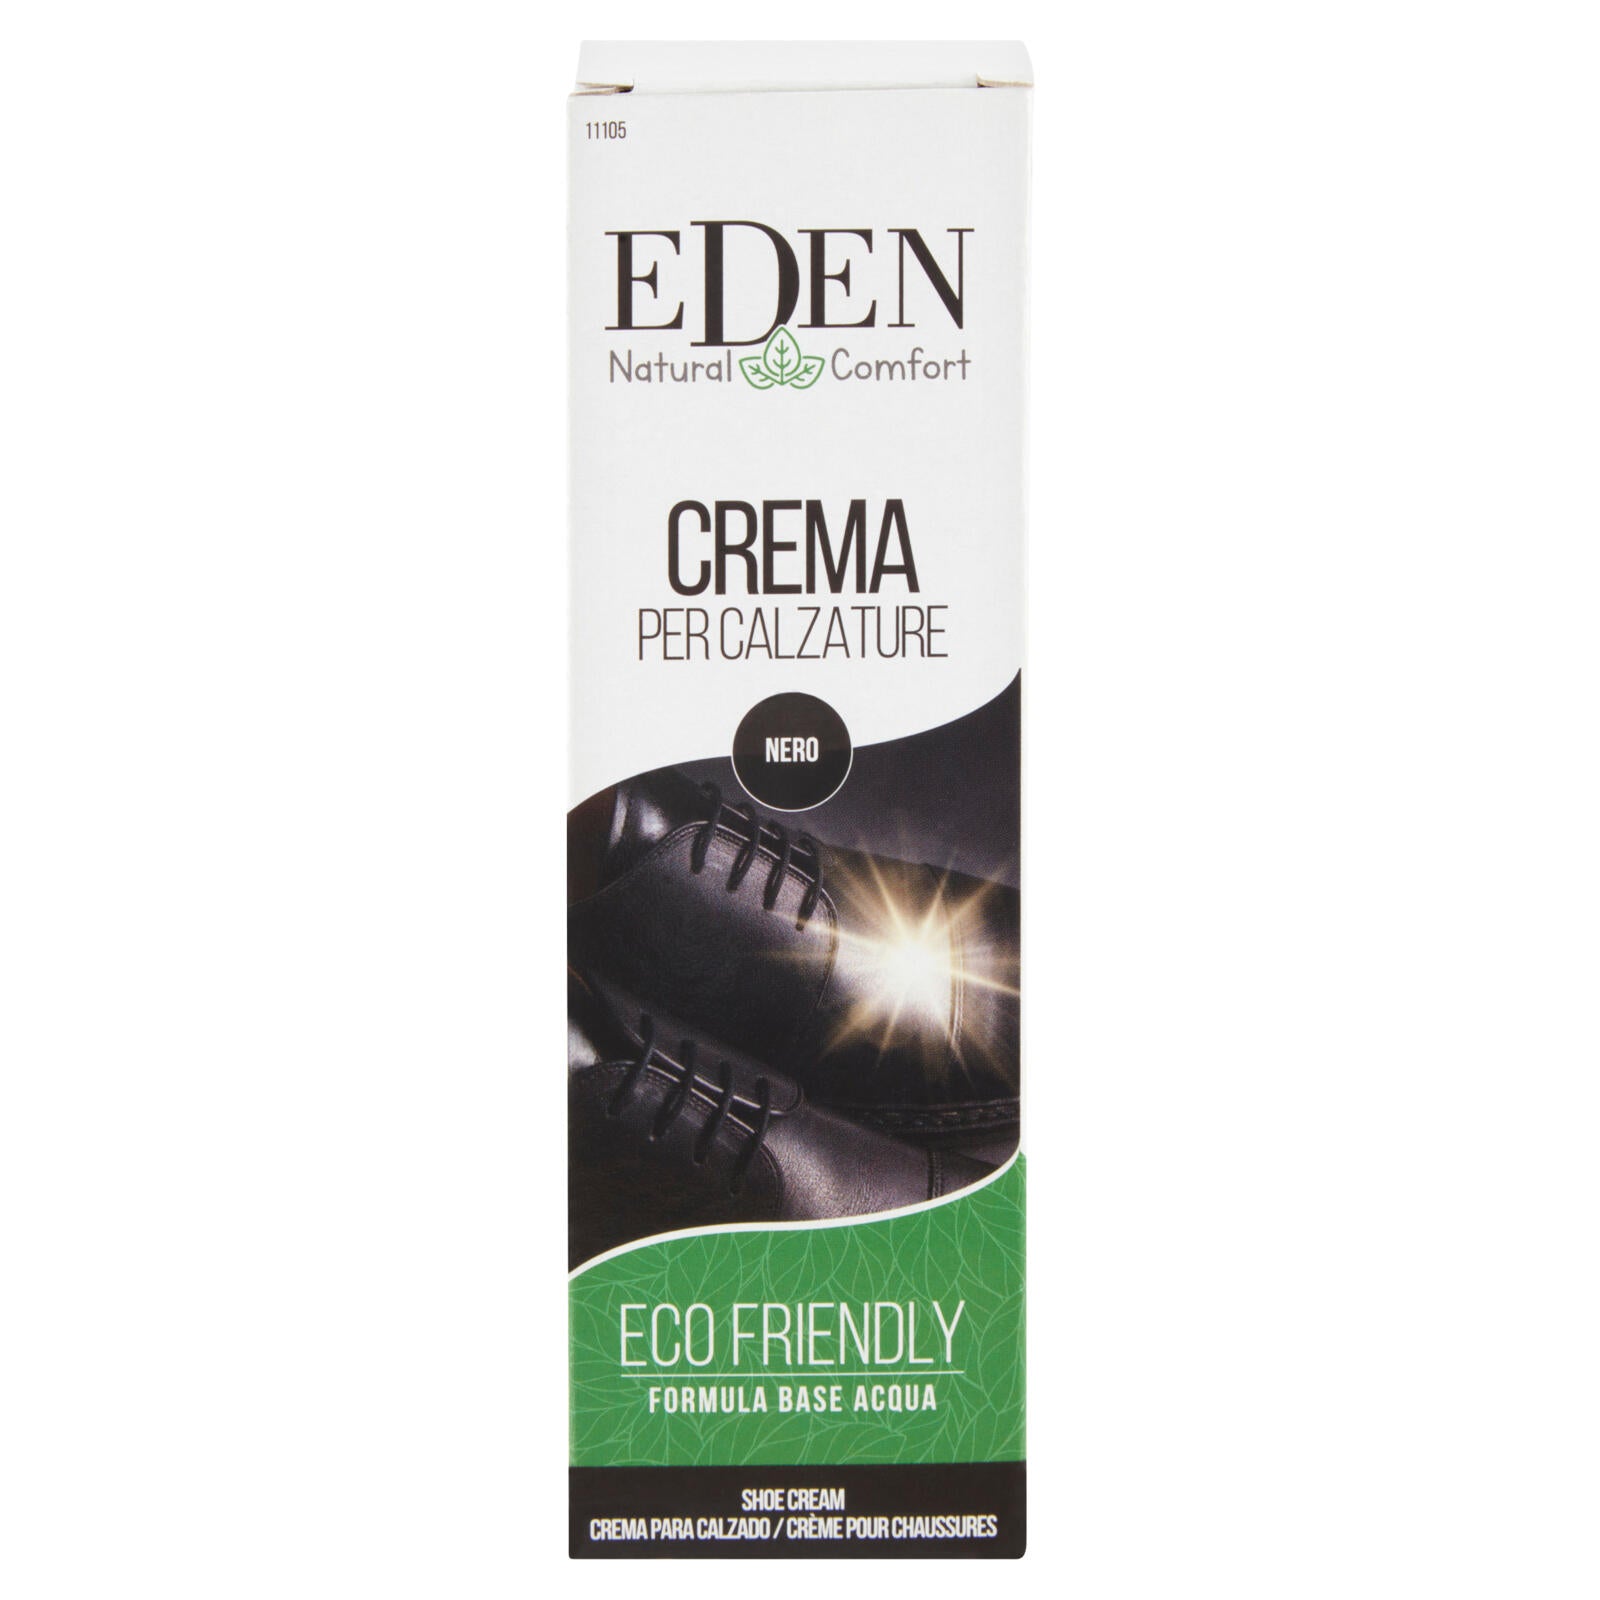 Eden Natural Comfort Crema per Calzature Nero 50 ml